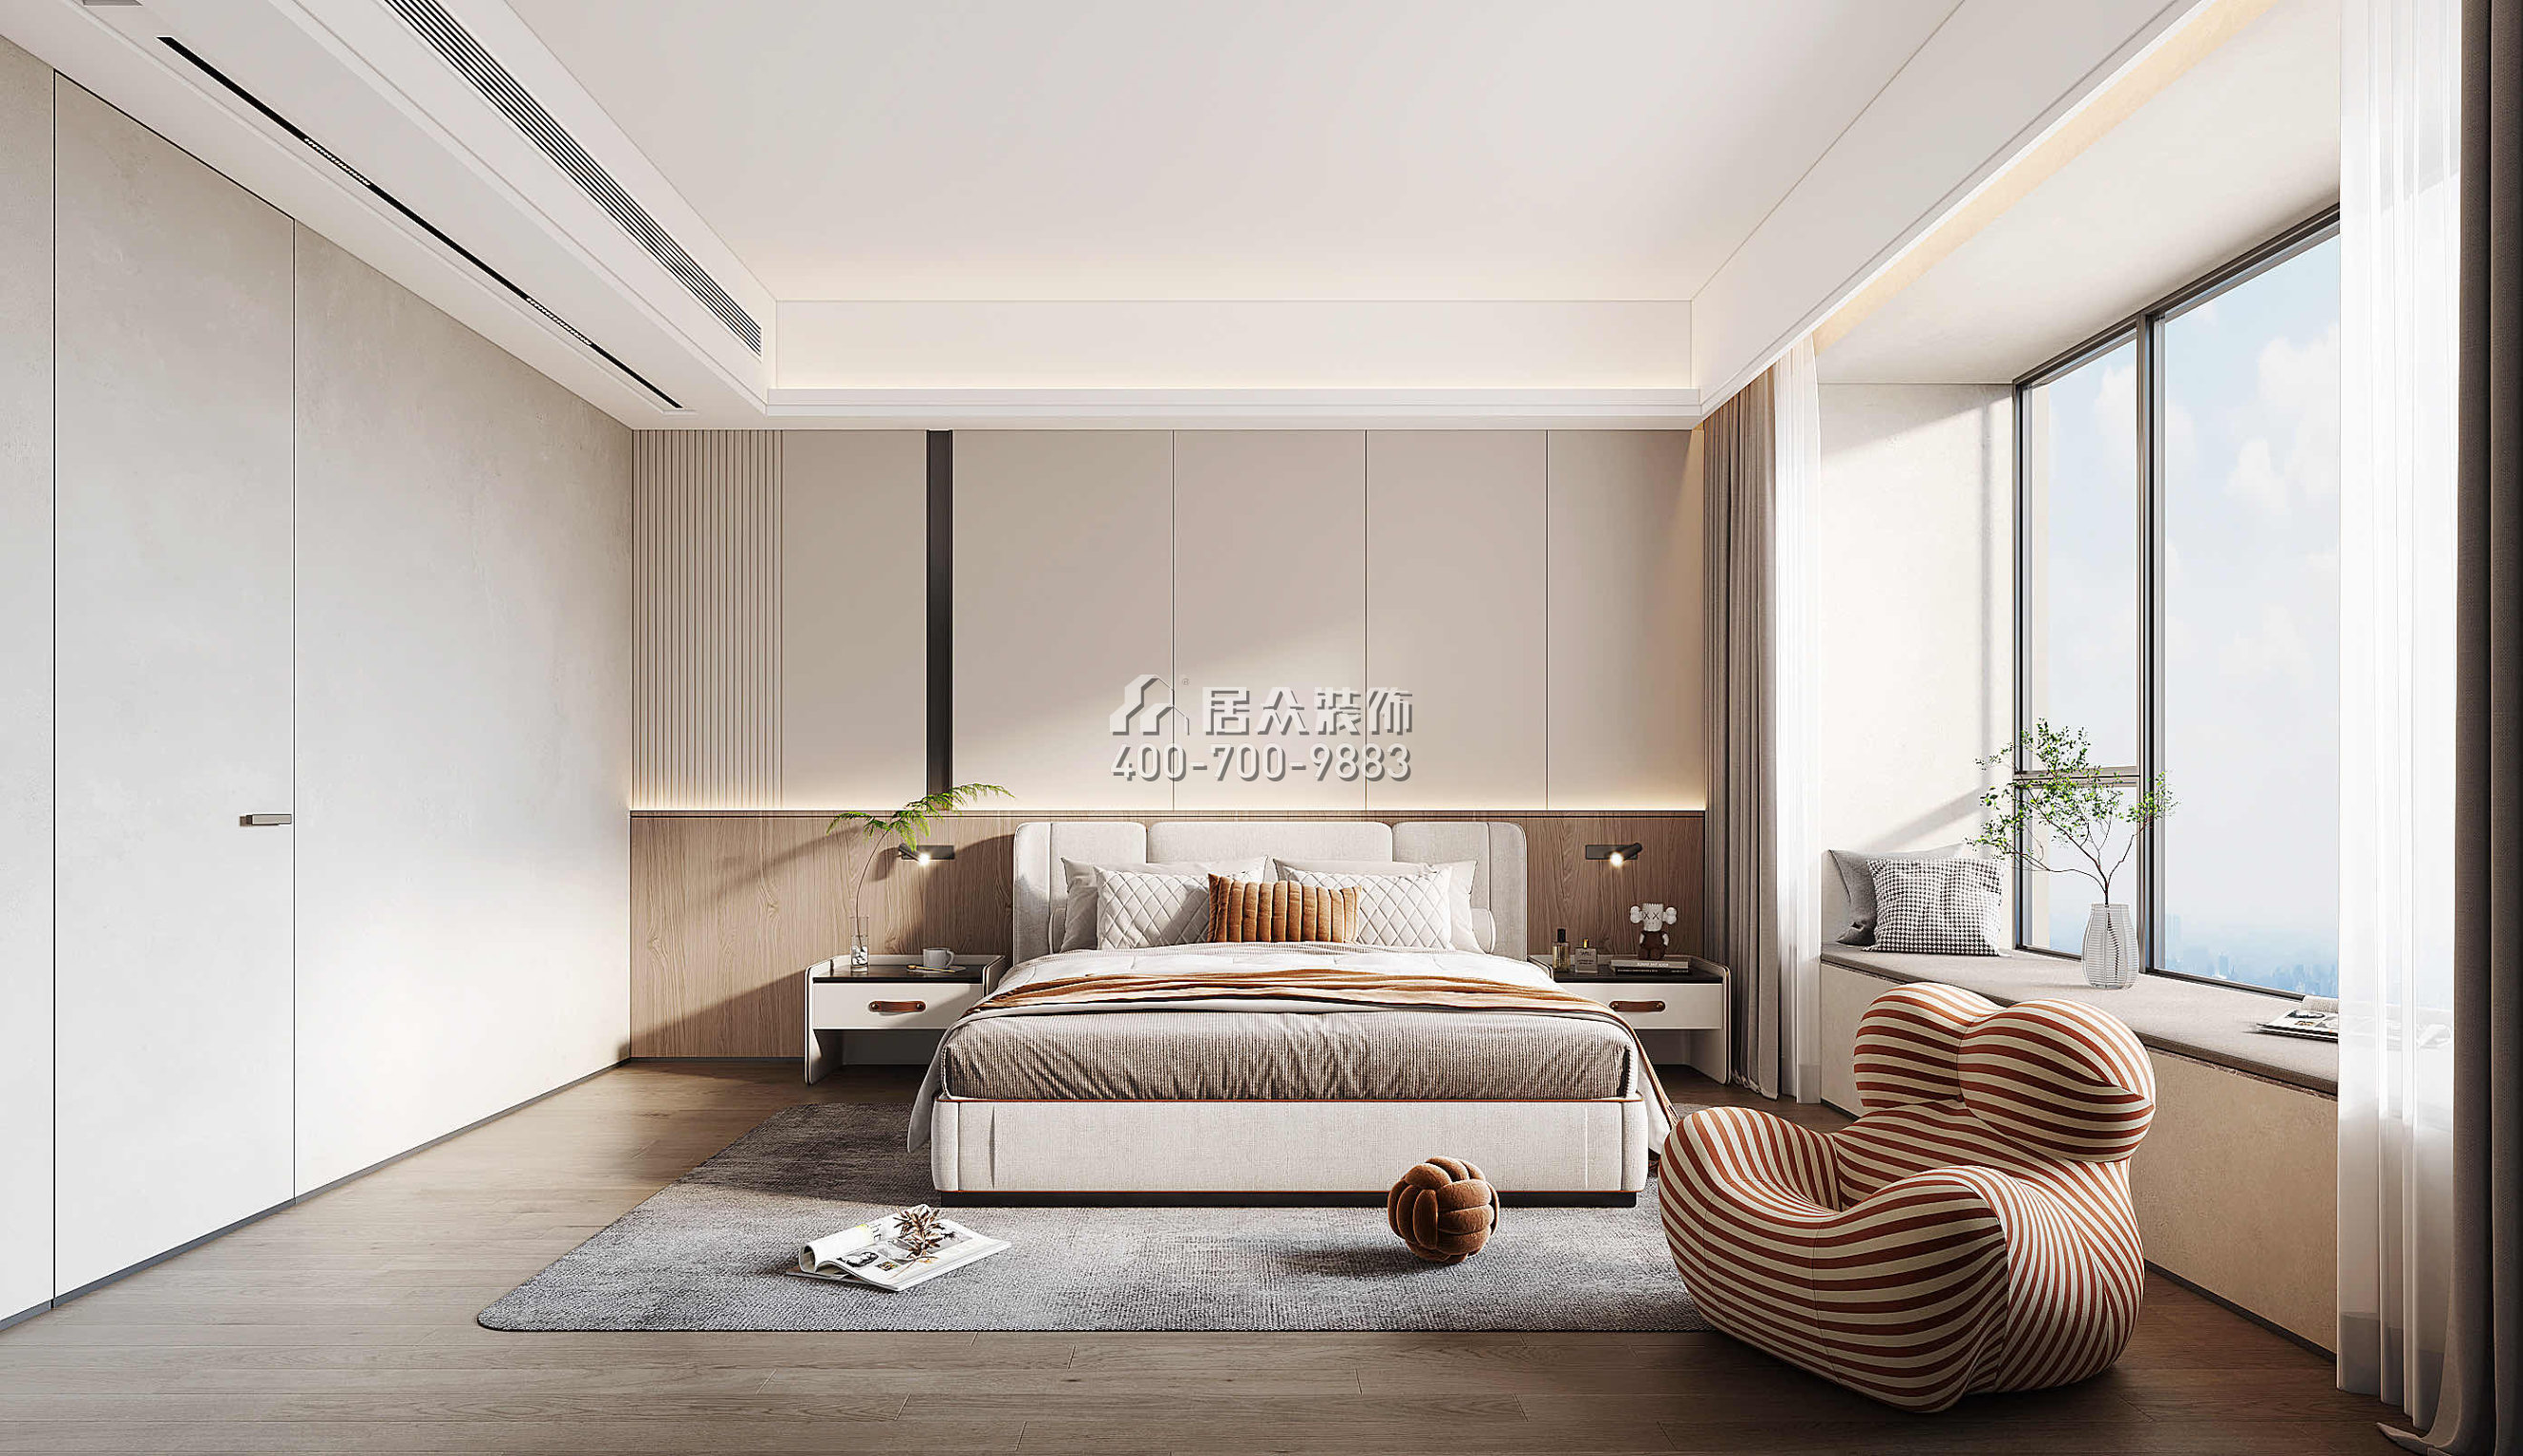 天健天骄南苑210平方米现代简约风格平层户型卧室装修效果图